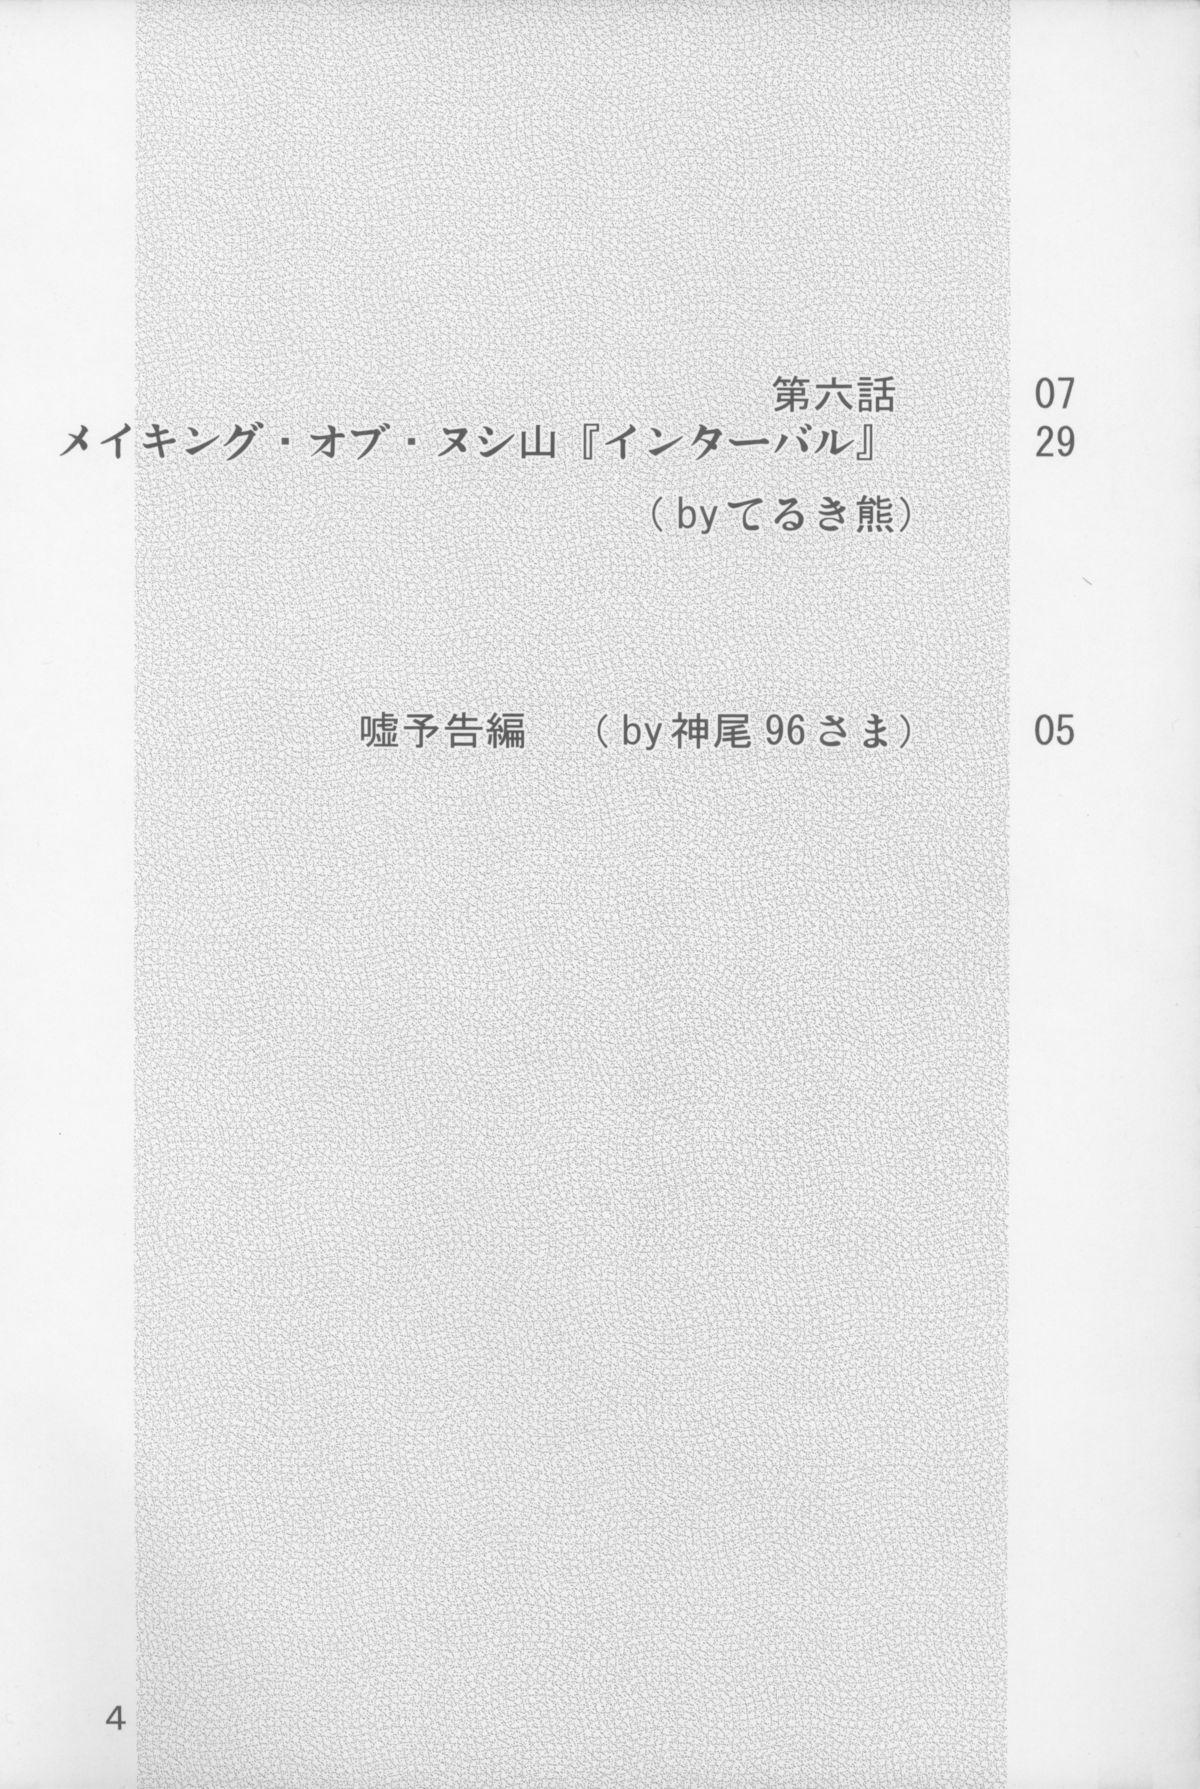 Nushi no Sumu Yama Vol. 6 4